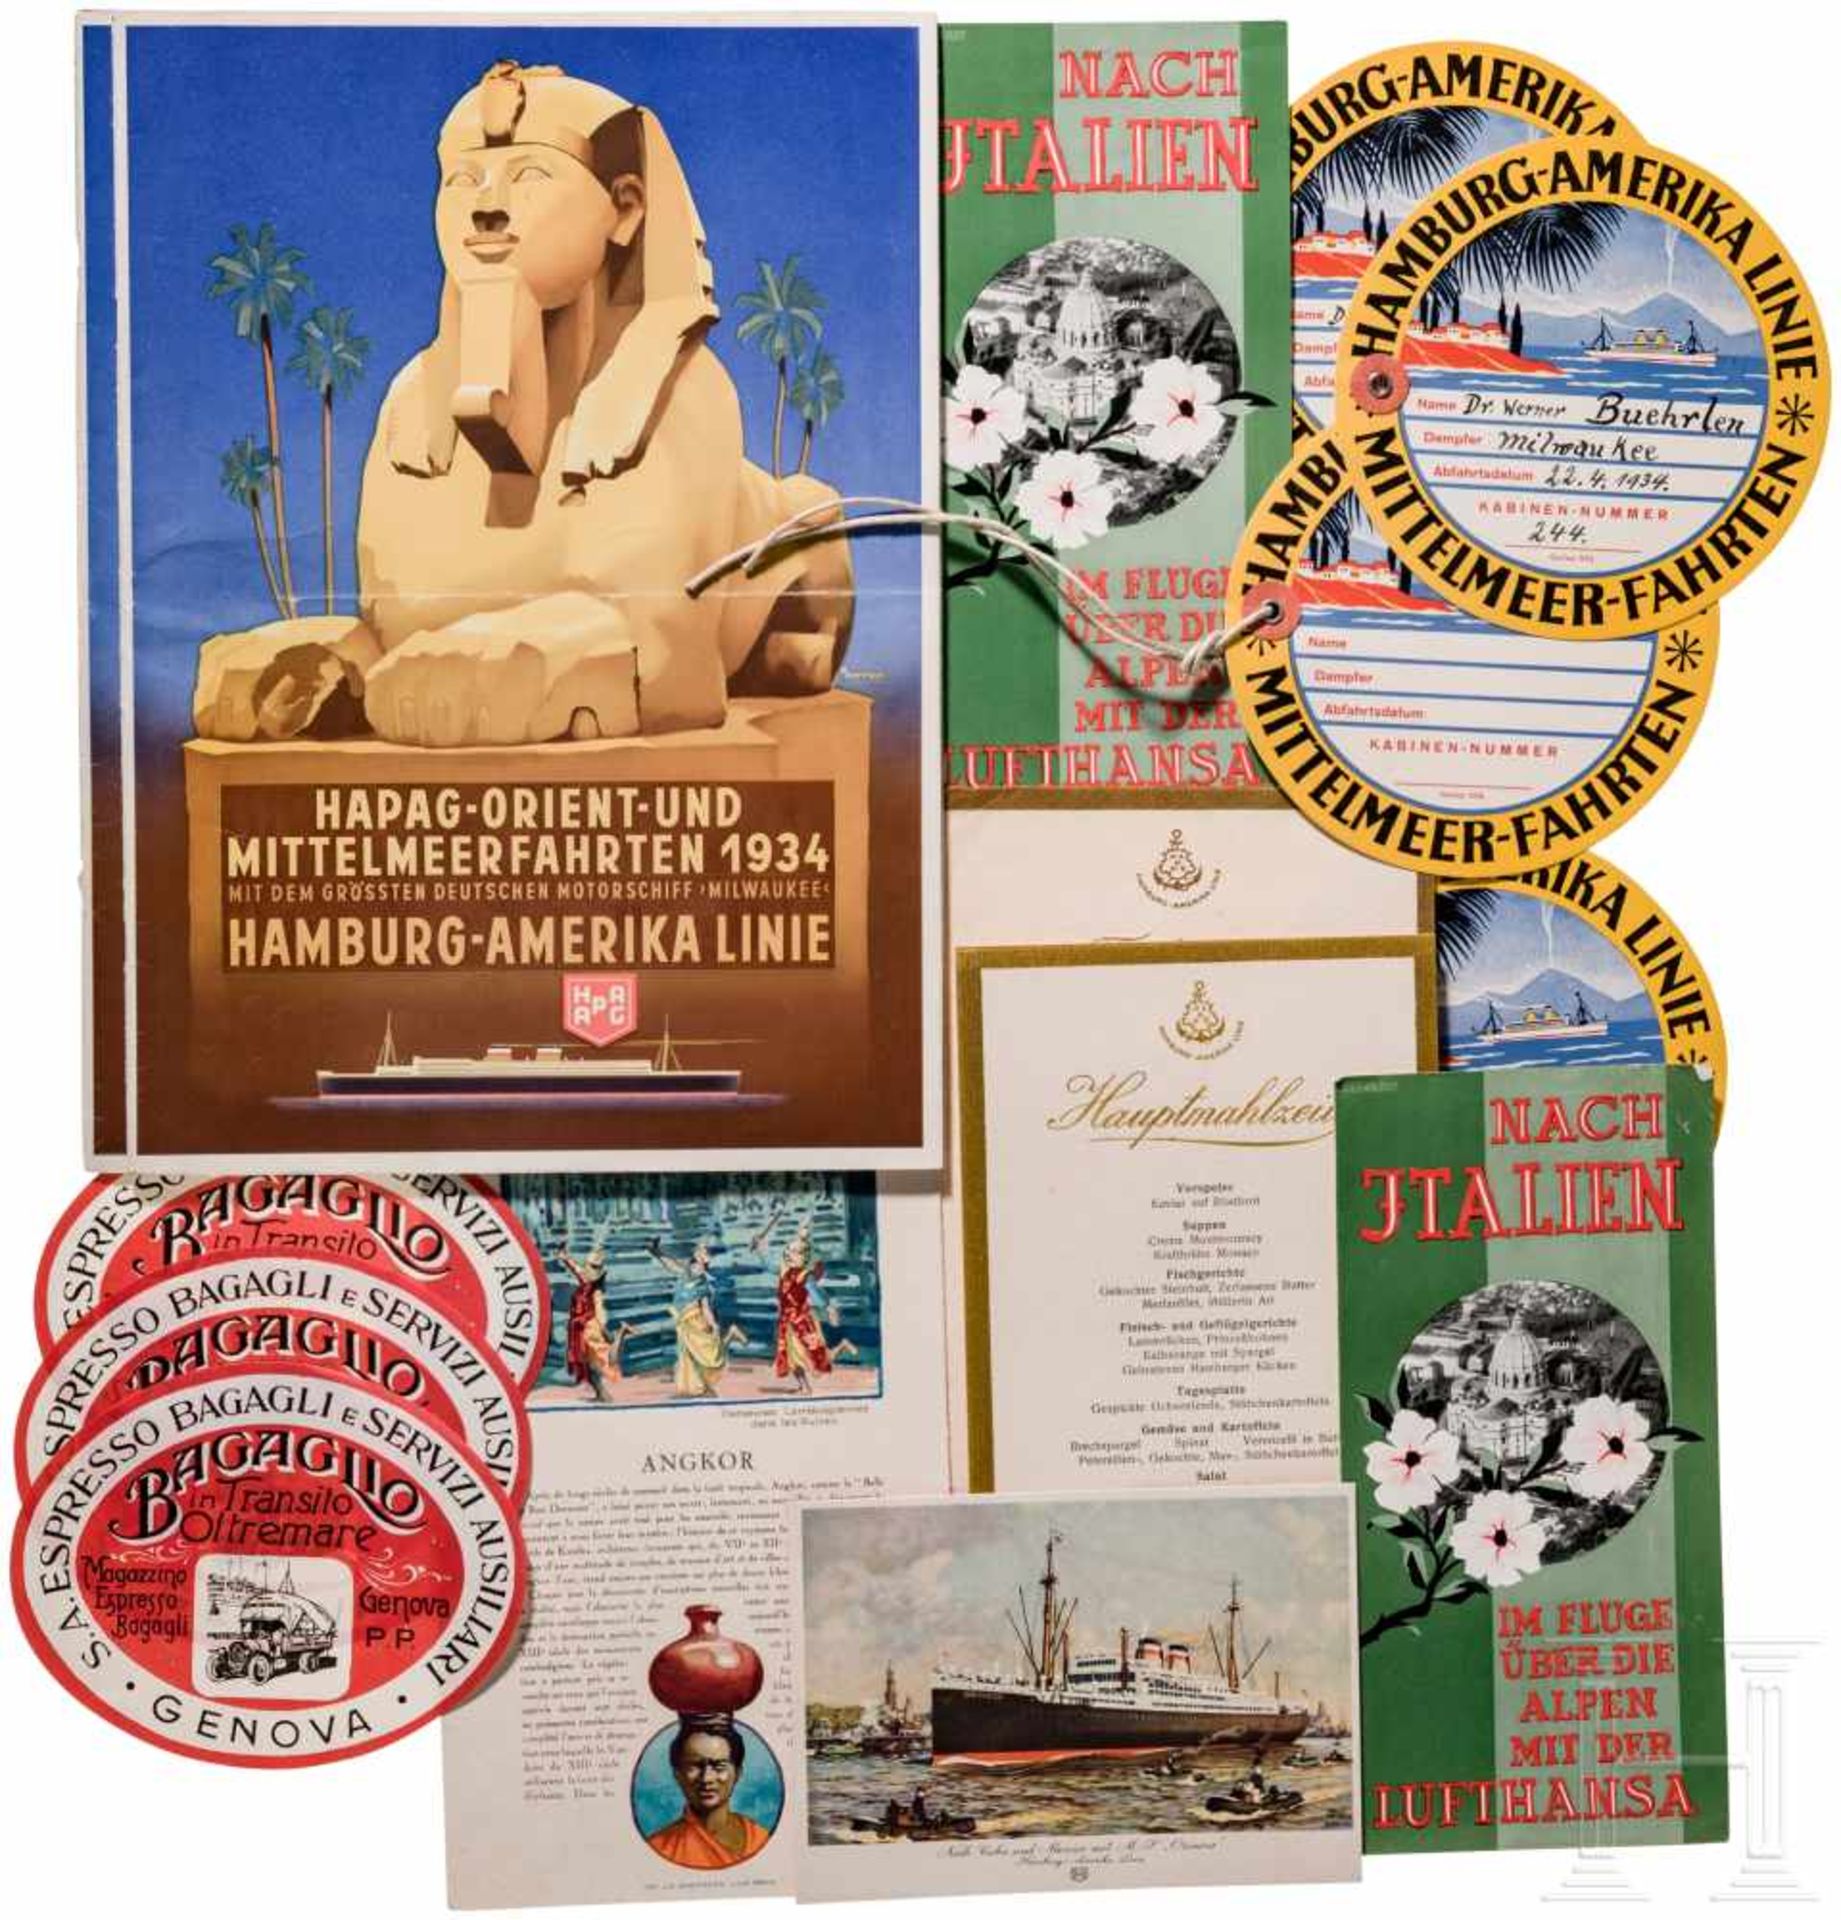 Reise- und Reklamehefte sowie Fotos einer Mittelmeerreise, um 1934Prospekte und Menükarten der MS "